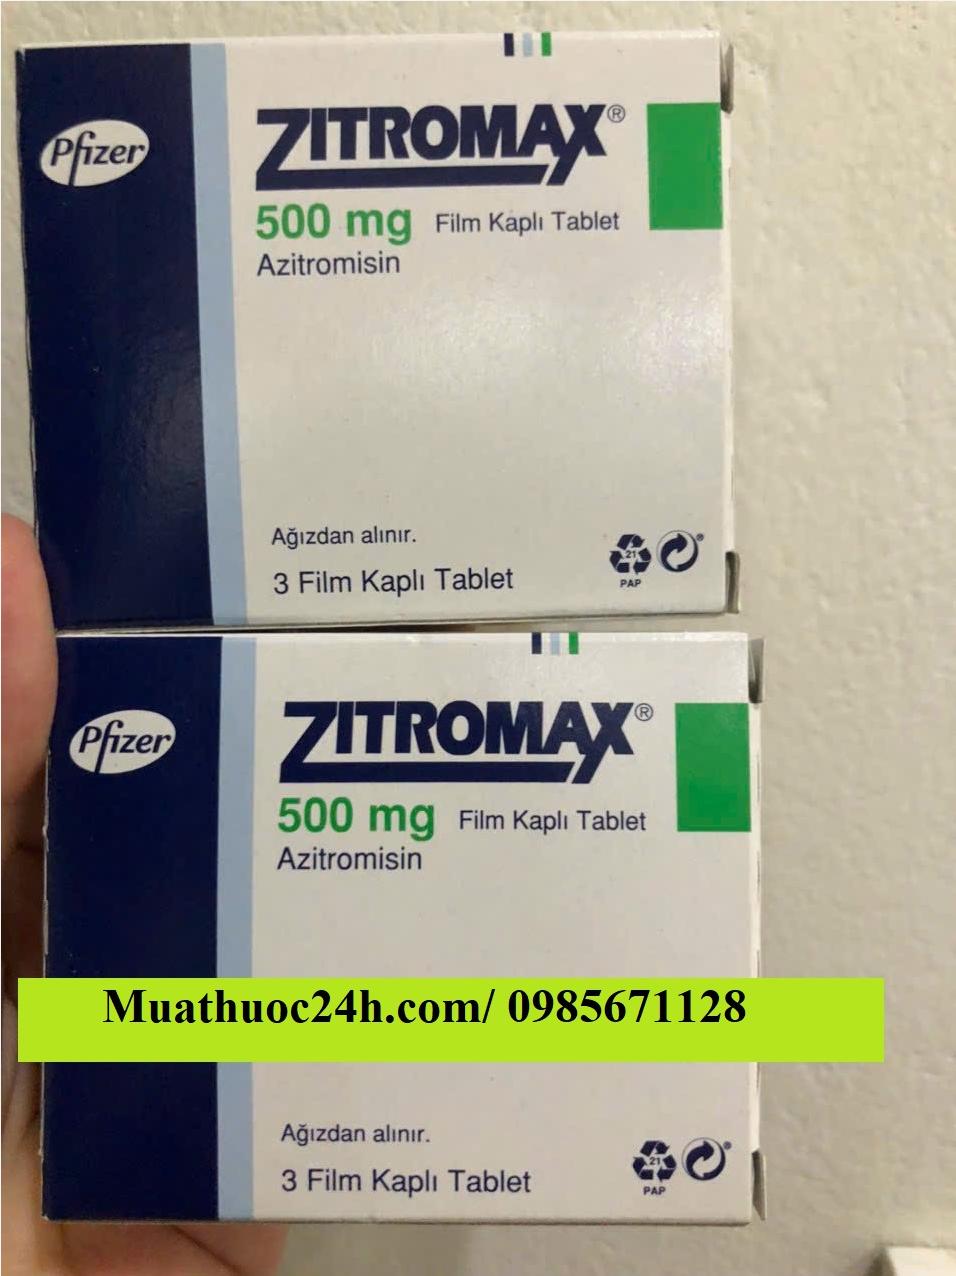 Thuốc Zitromax 500mg Azithromycin giá bao nhiêu mua ở đâu